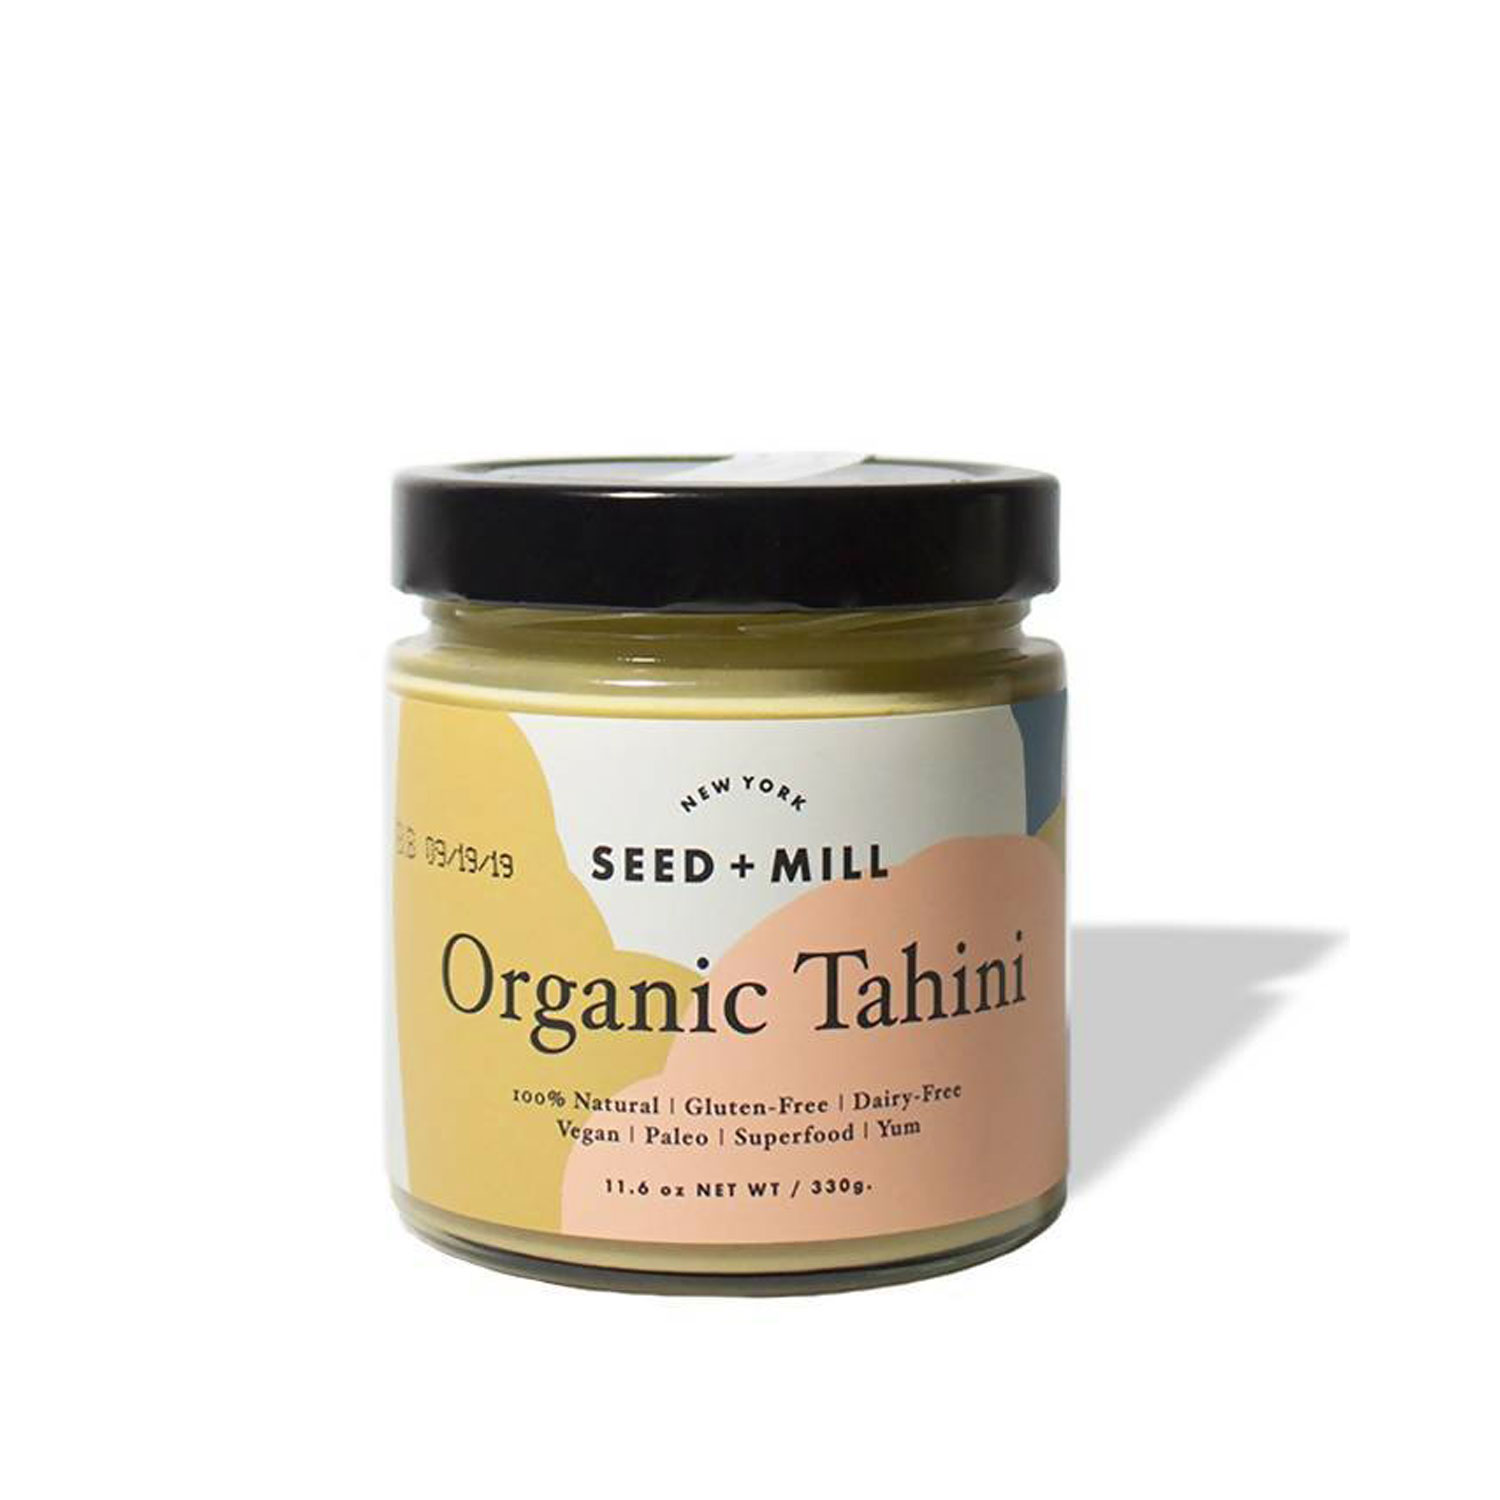 Organic Tahini by Seed + Mill